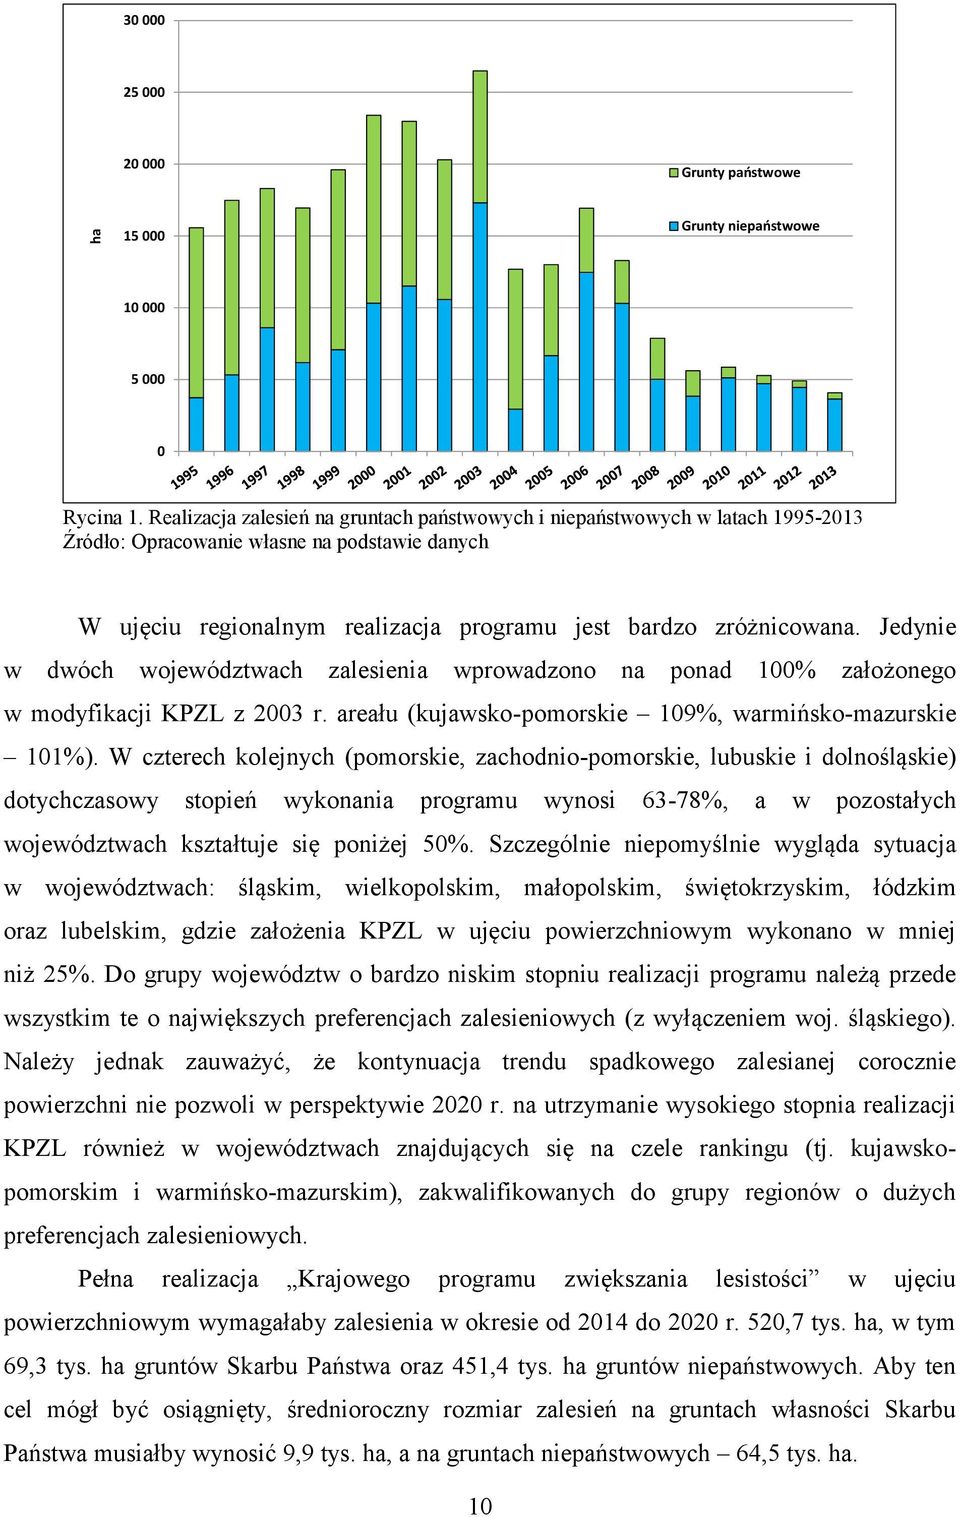 Jedynie w dwóch województwach zalesienia wprowadzono na ponad 100% założonego w modyfikacji KPZL z 2003 r. areału (kujawsko-pomorskie 109%, warmińsko-mazurskie 101%).